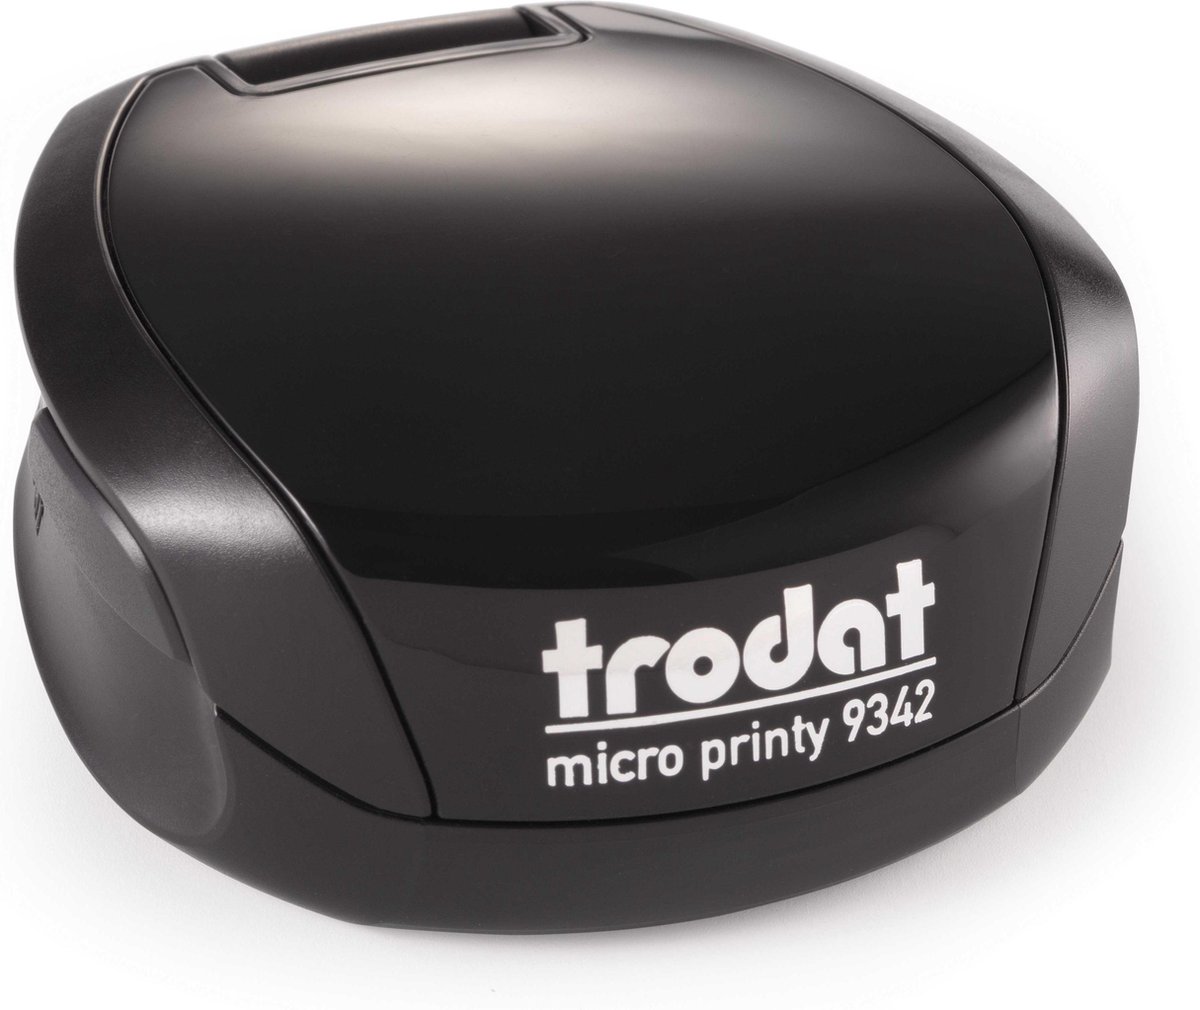 Trodat Micro Printy 9342 zwart/zwart ø 42 mm incl. voucher voor tekst of logo - Trodat